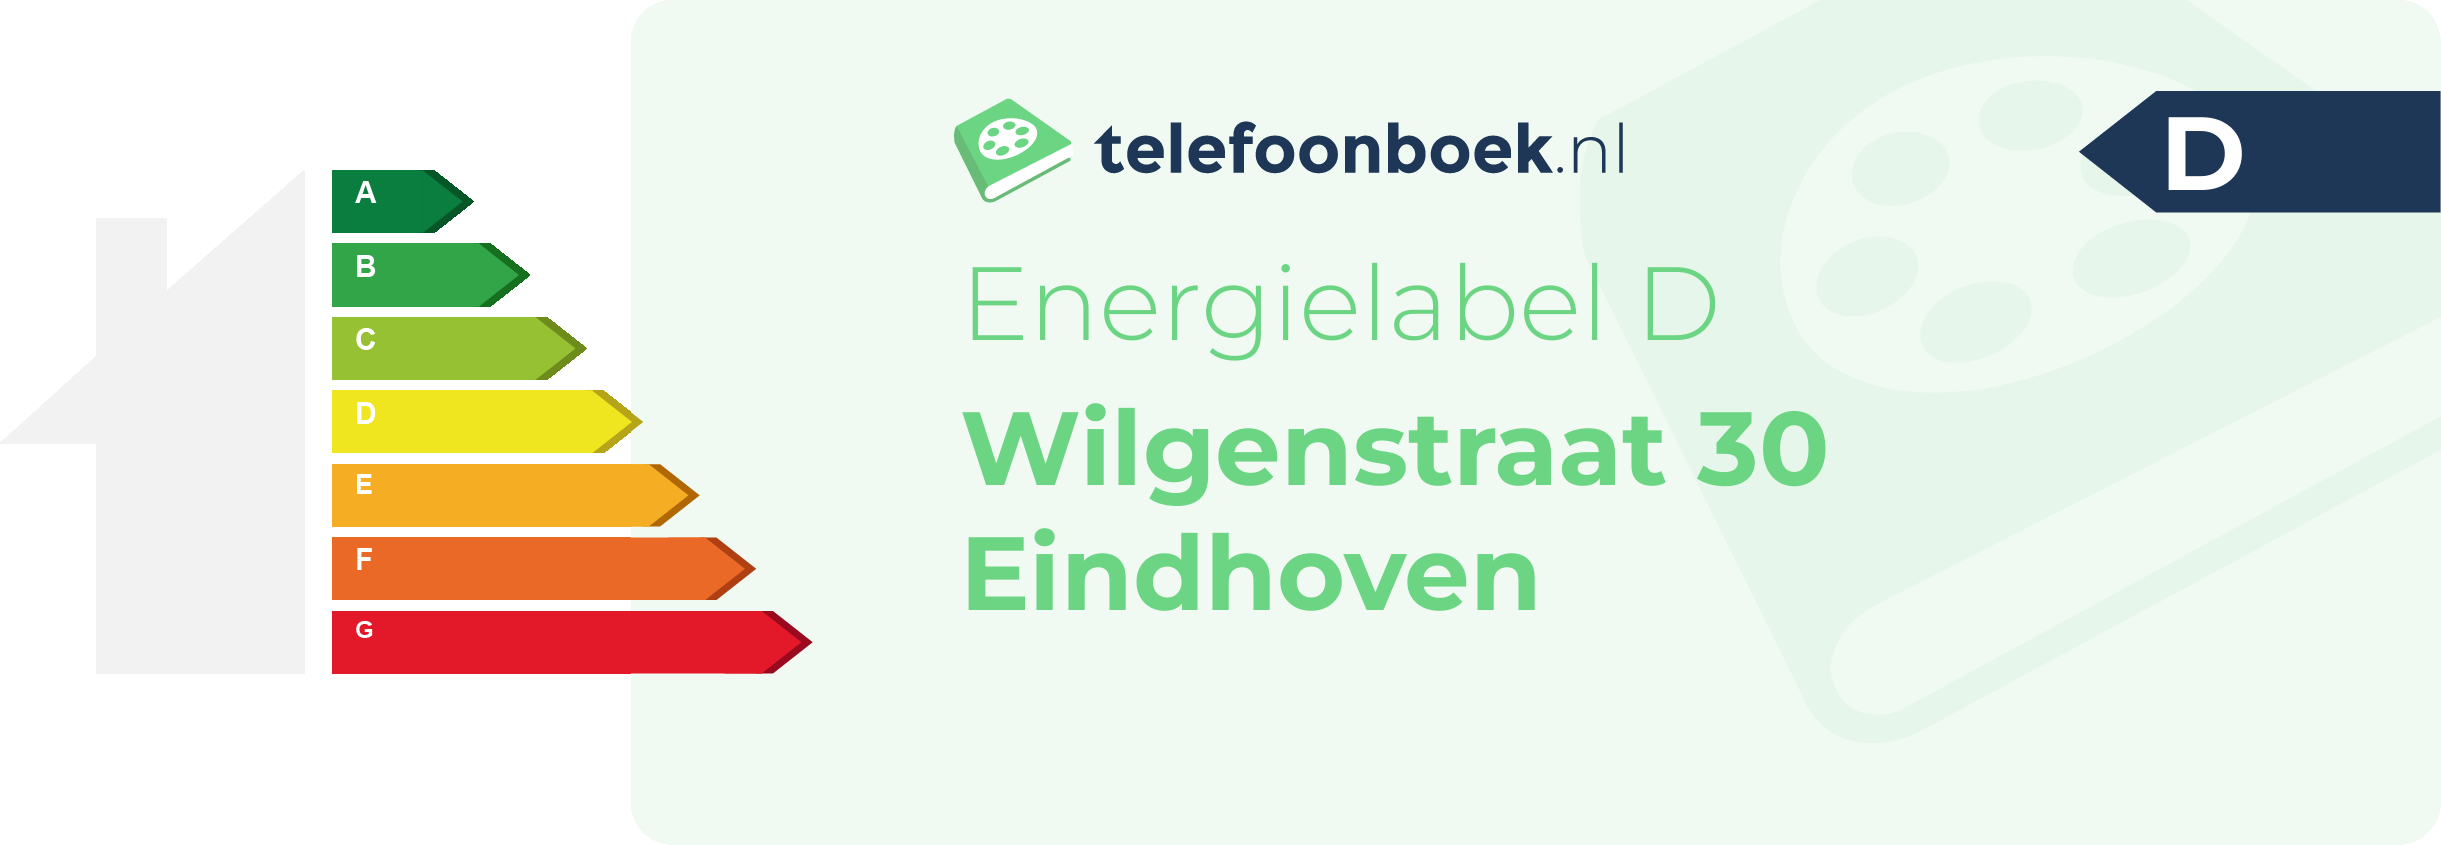 Energielabel Wilgenstraat 30 Eindhoven